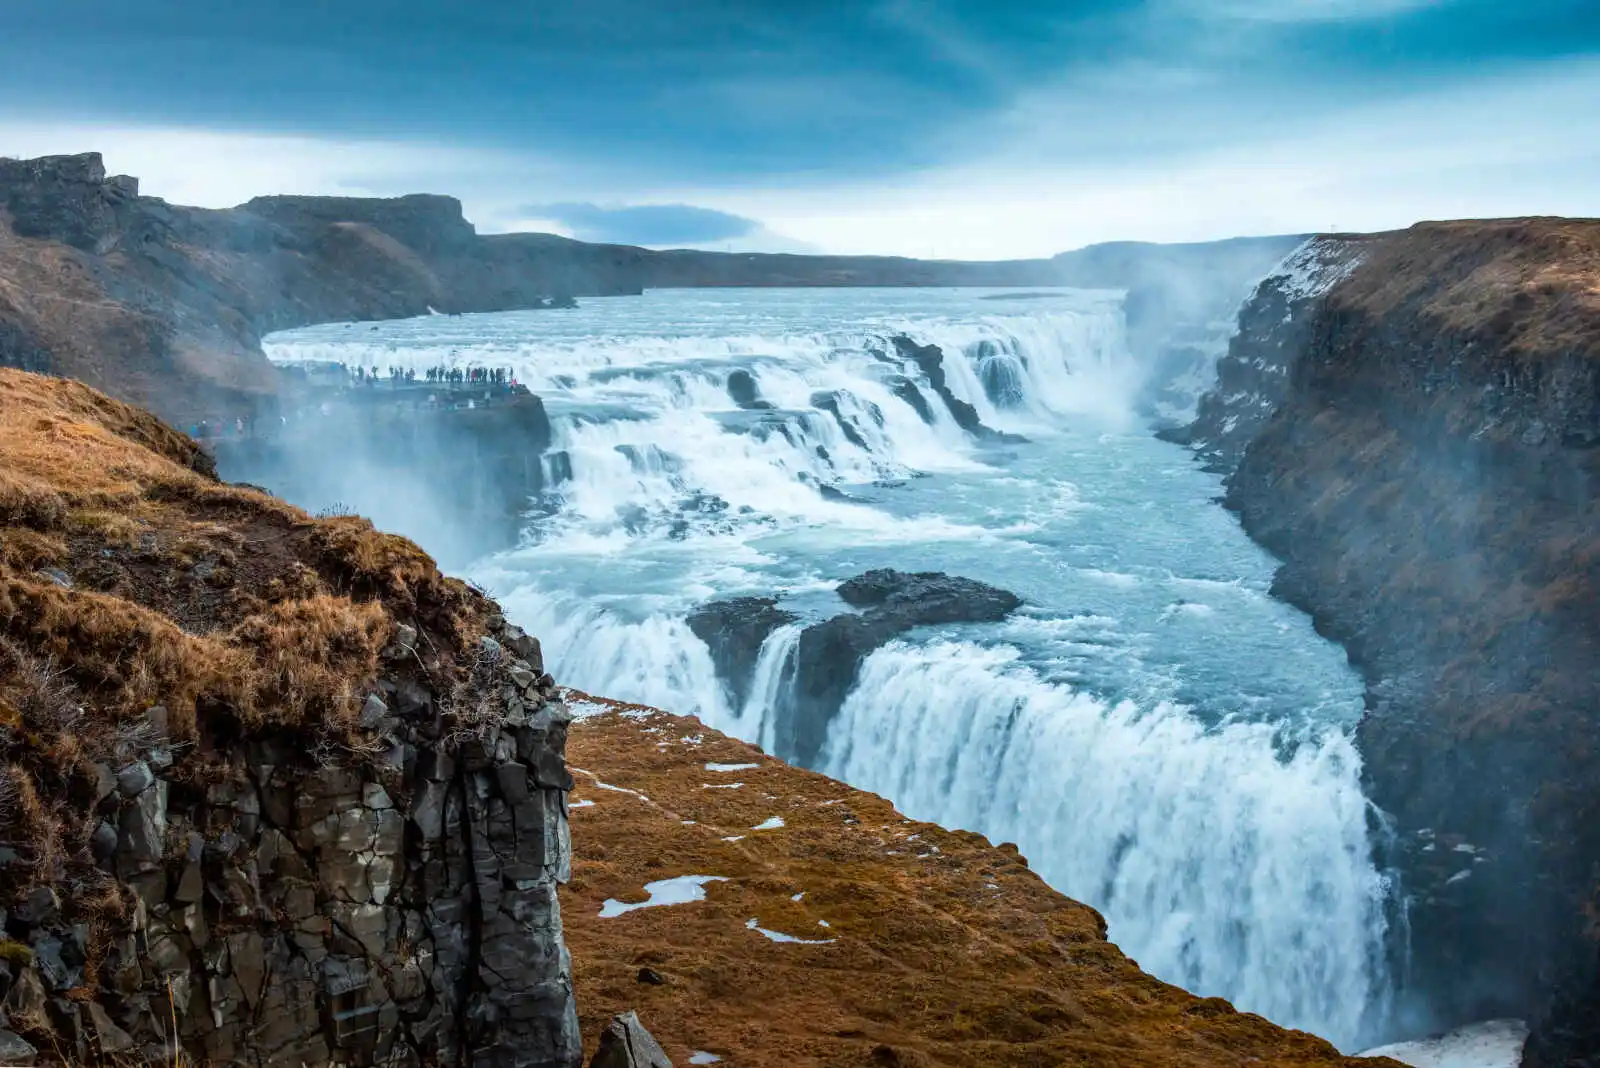 Islande - Autotour Sur la Route des Glaciers en Eté